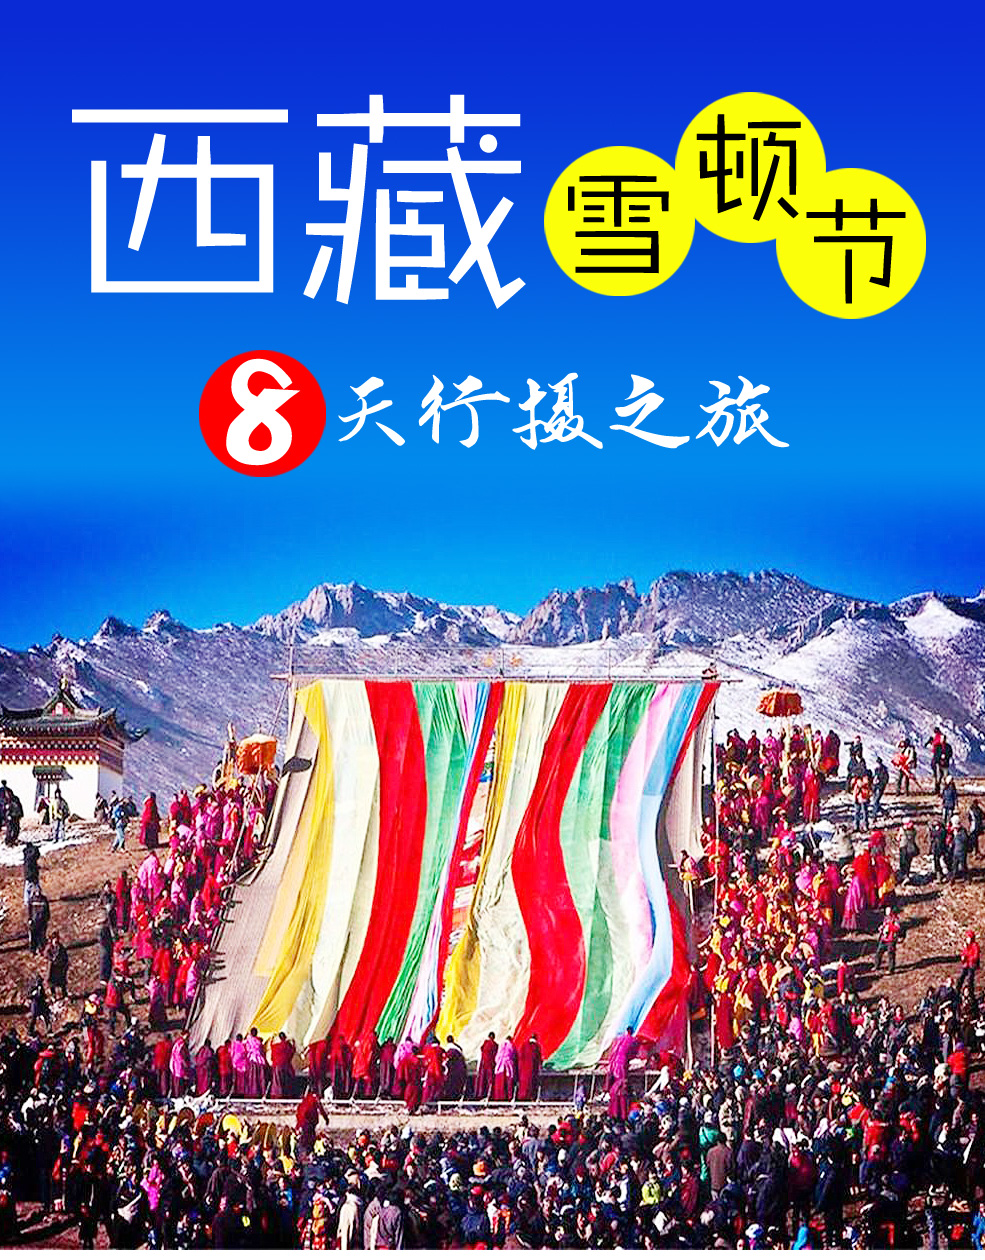 【一年唯此一次】西藏雪顿节民族狂欢盛典8天行摄之旅